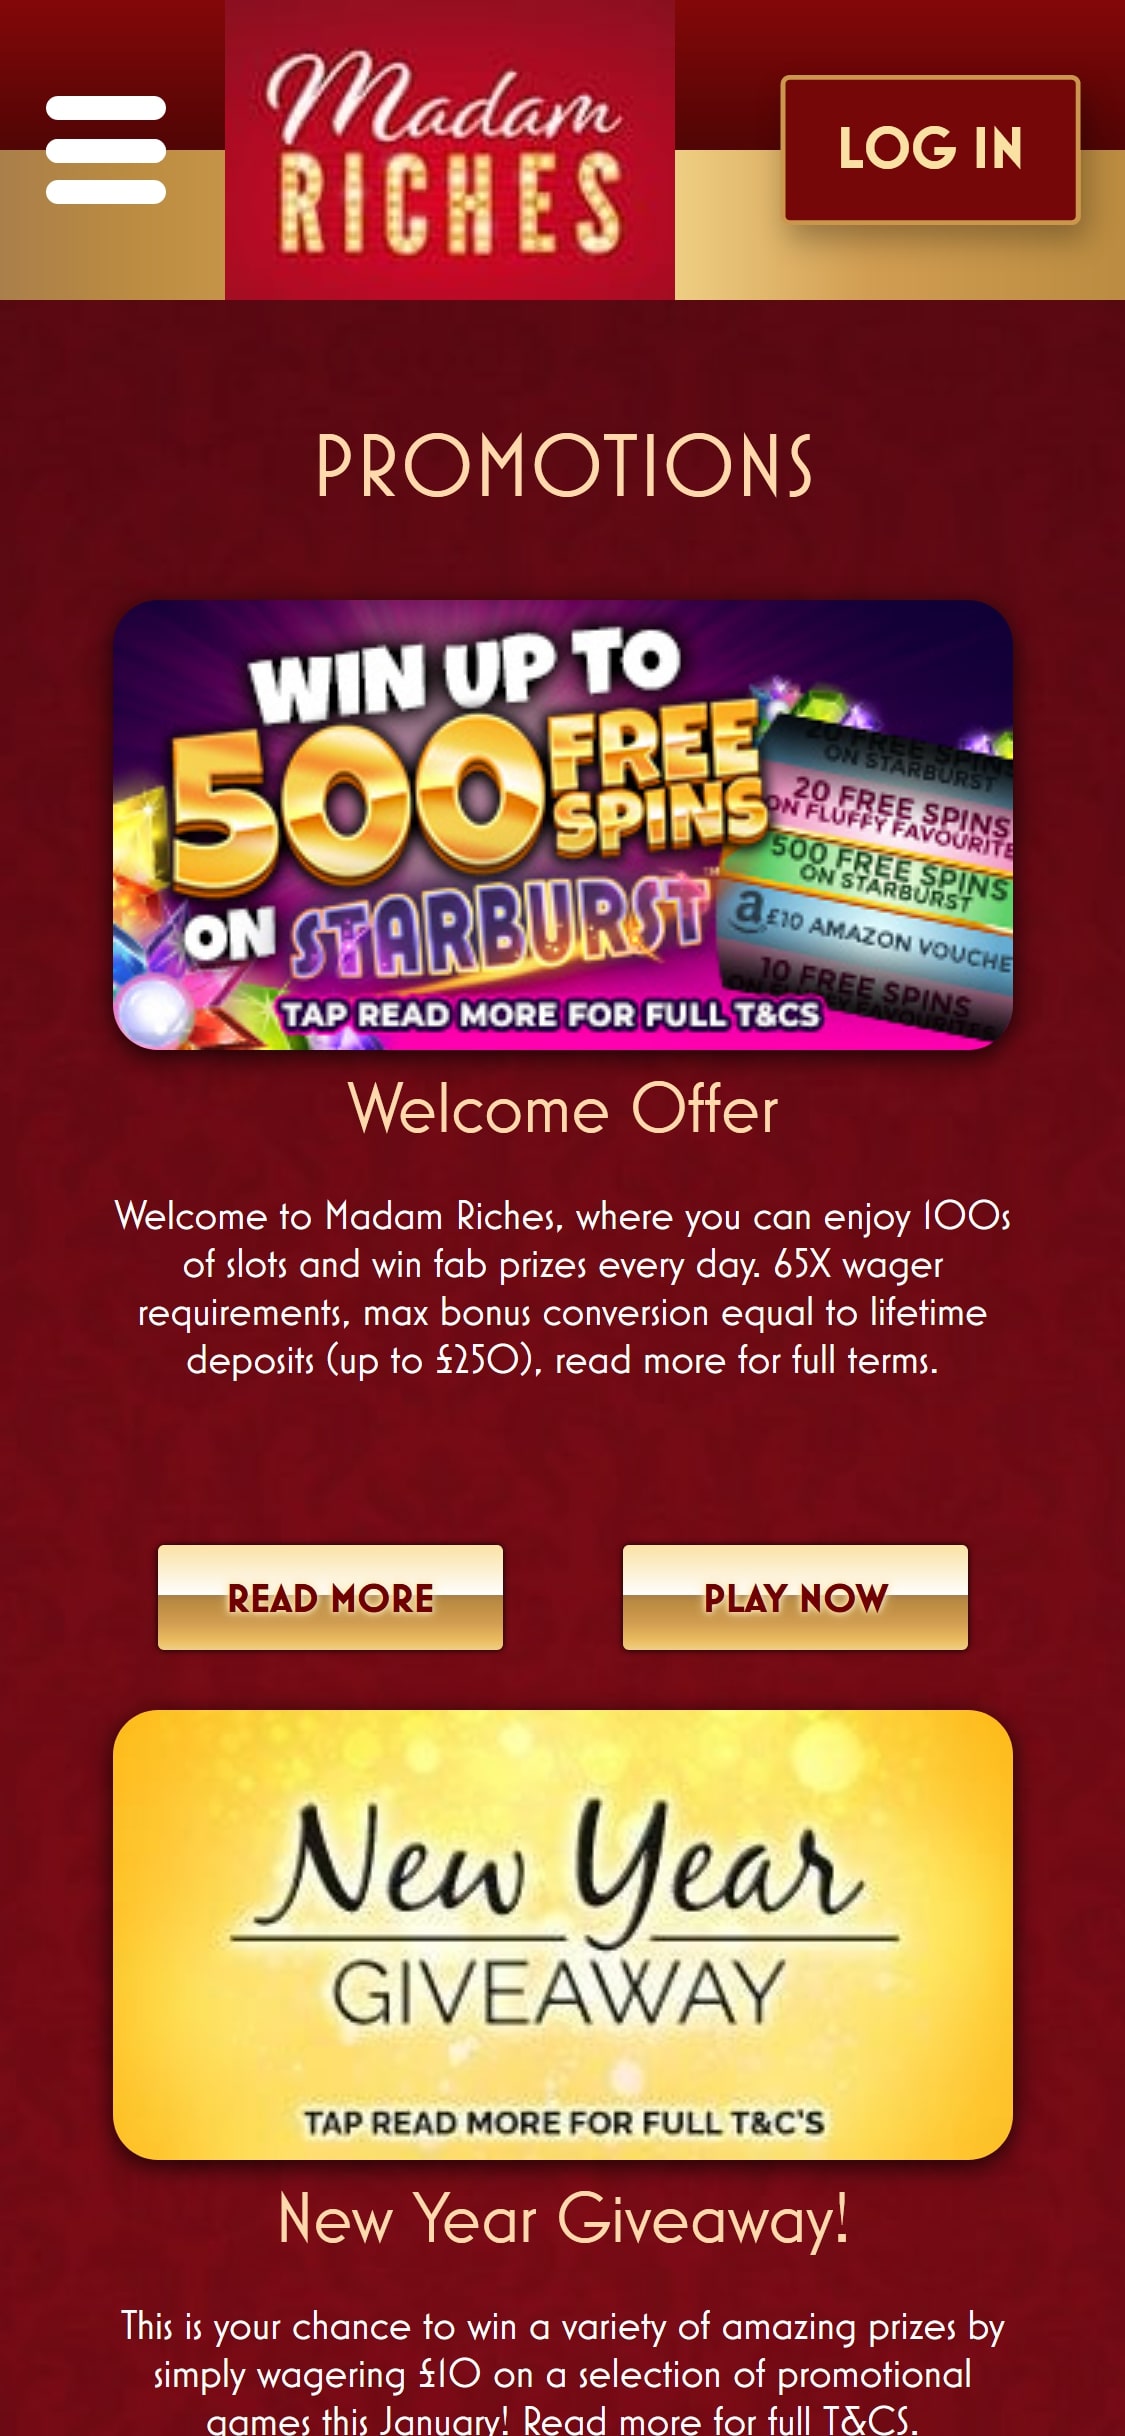 Madam Riches Casino Mobile No Deposit Bonus Review